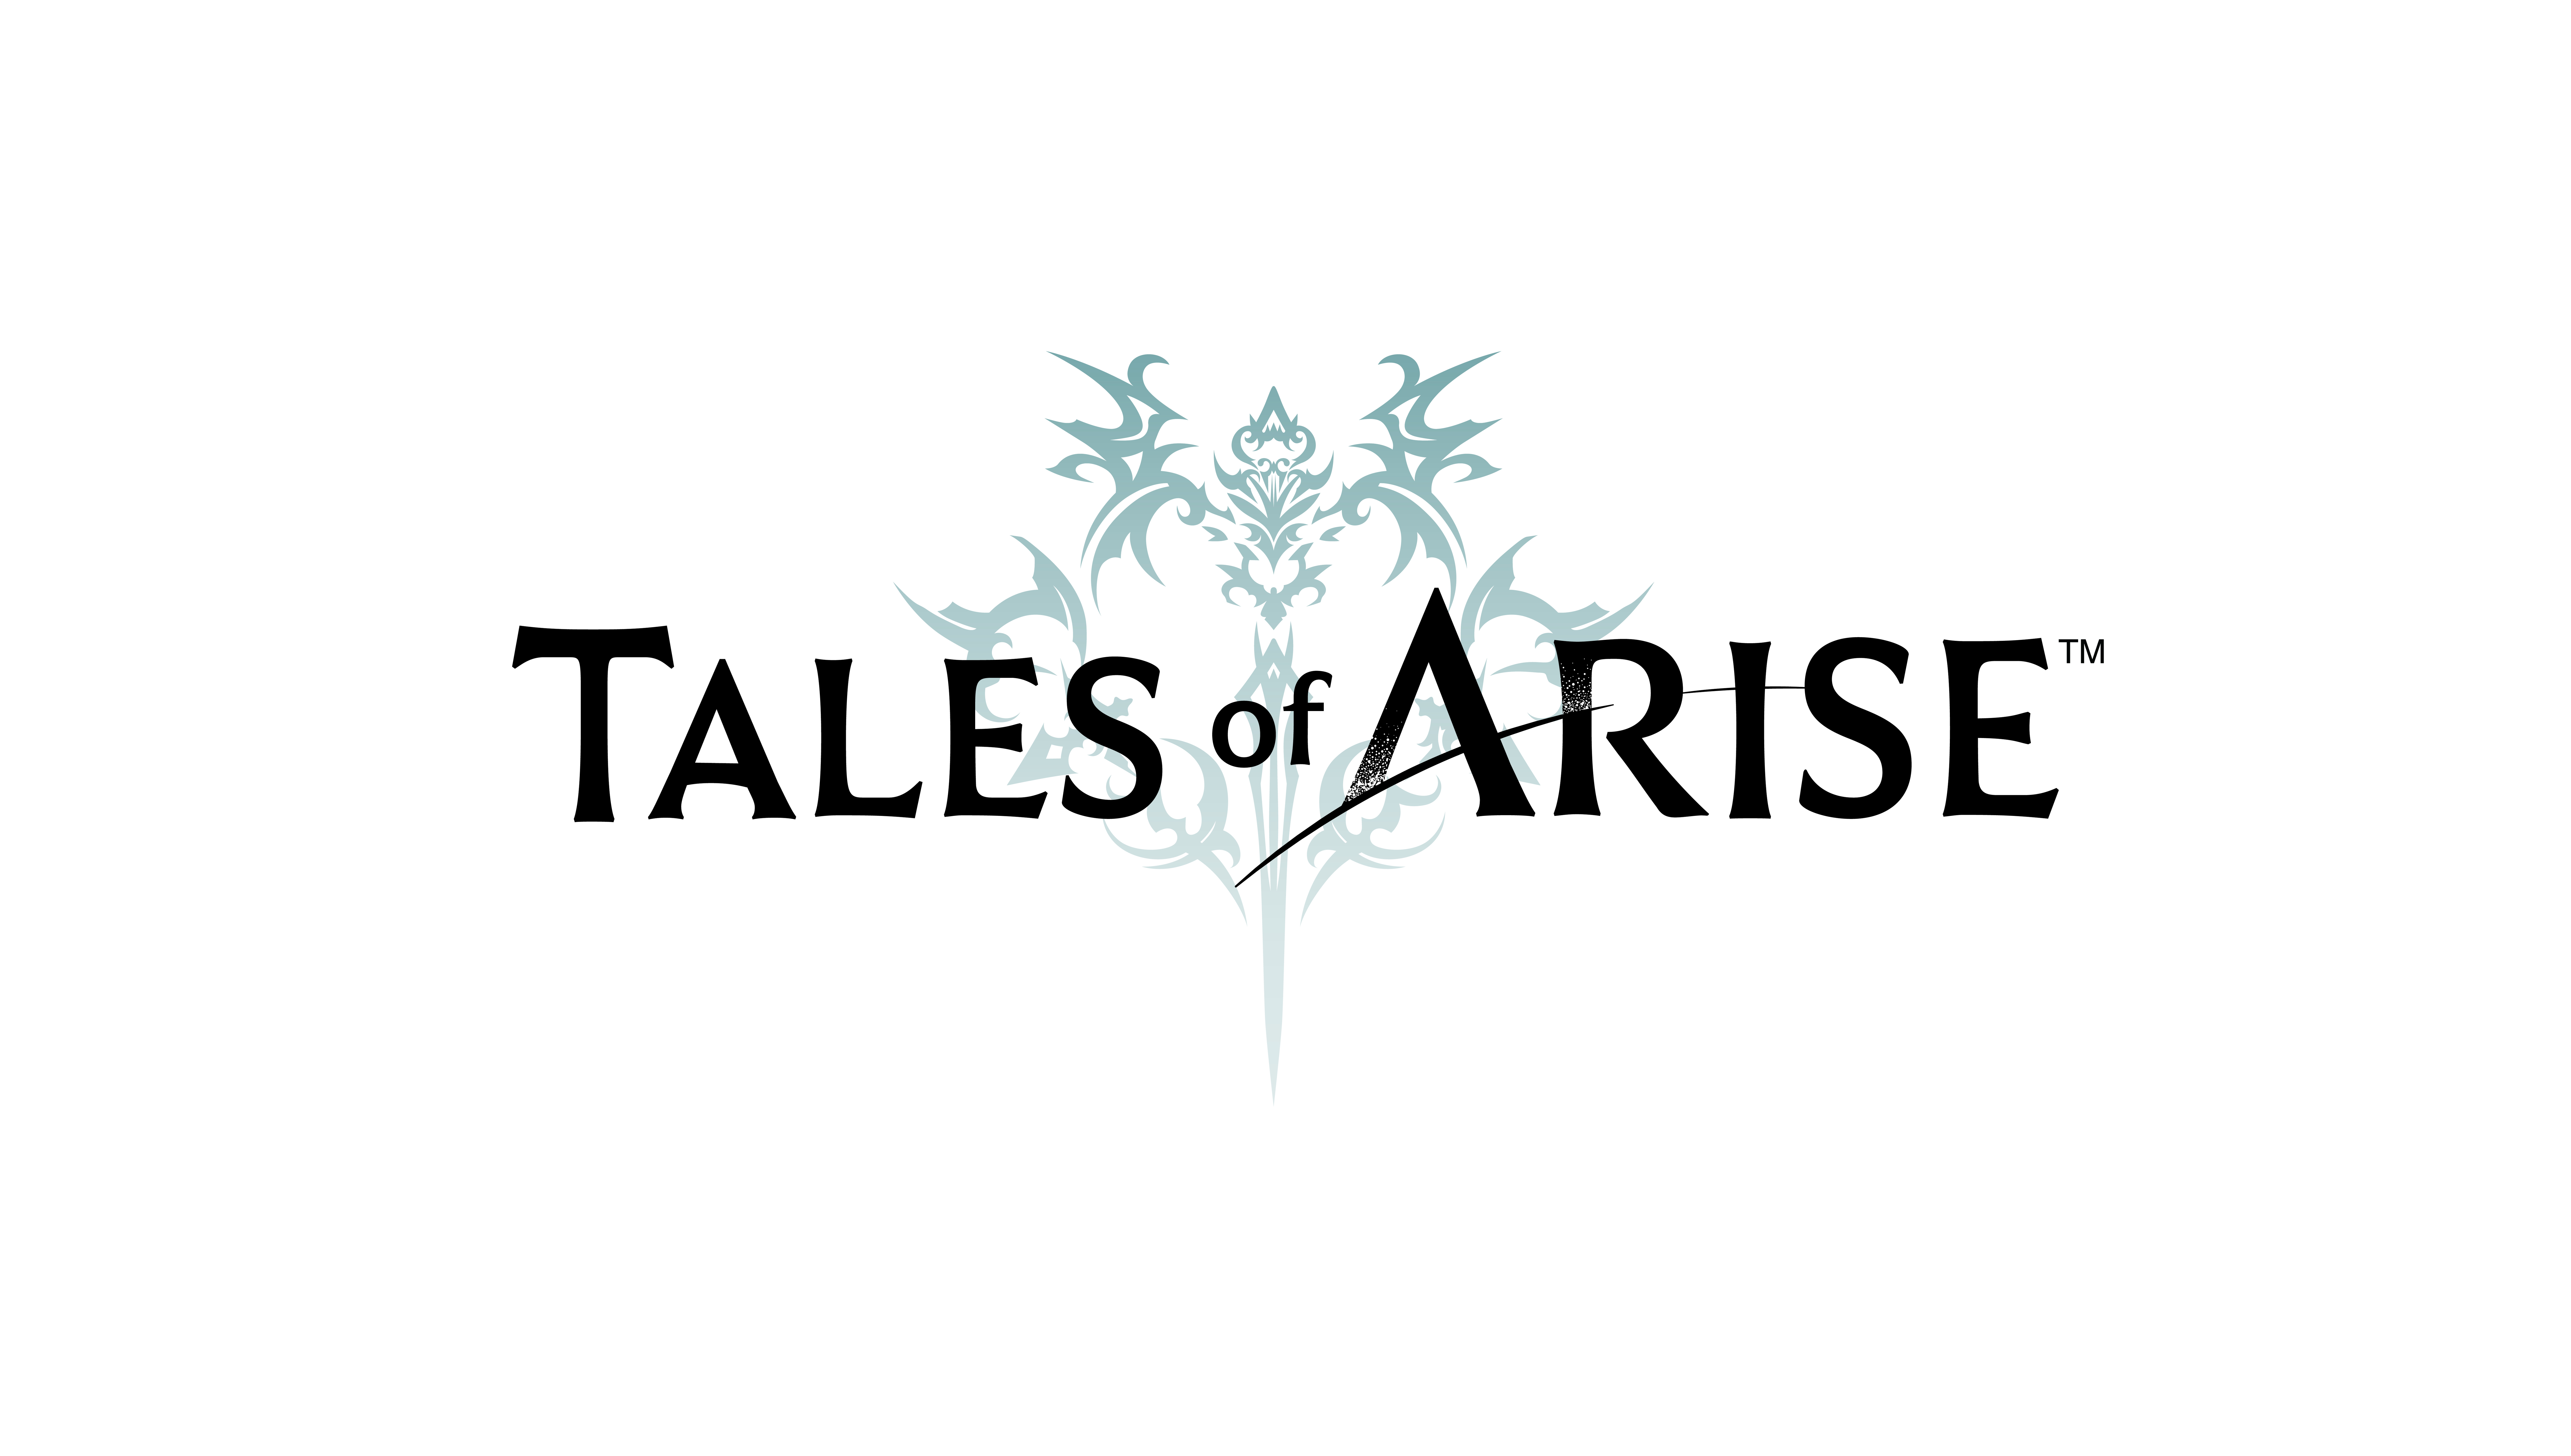 Tales of ARISE を追加しました